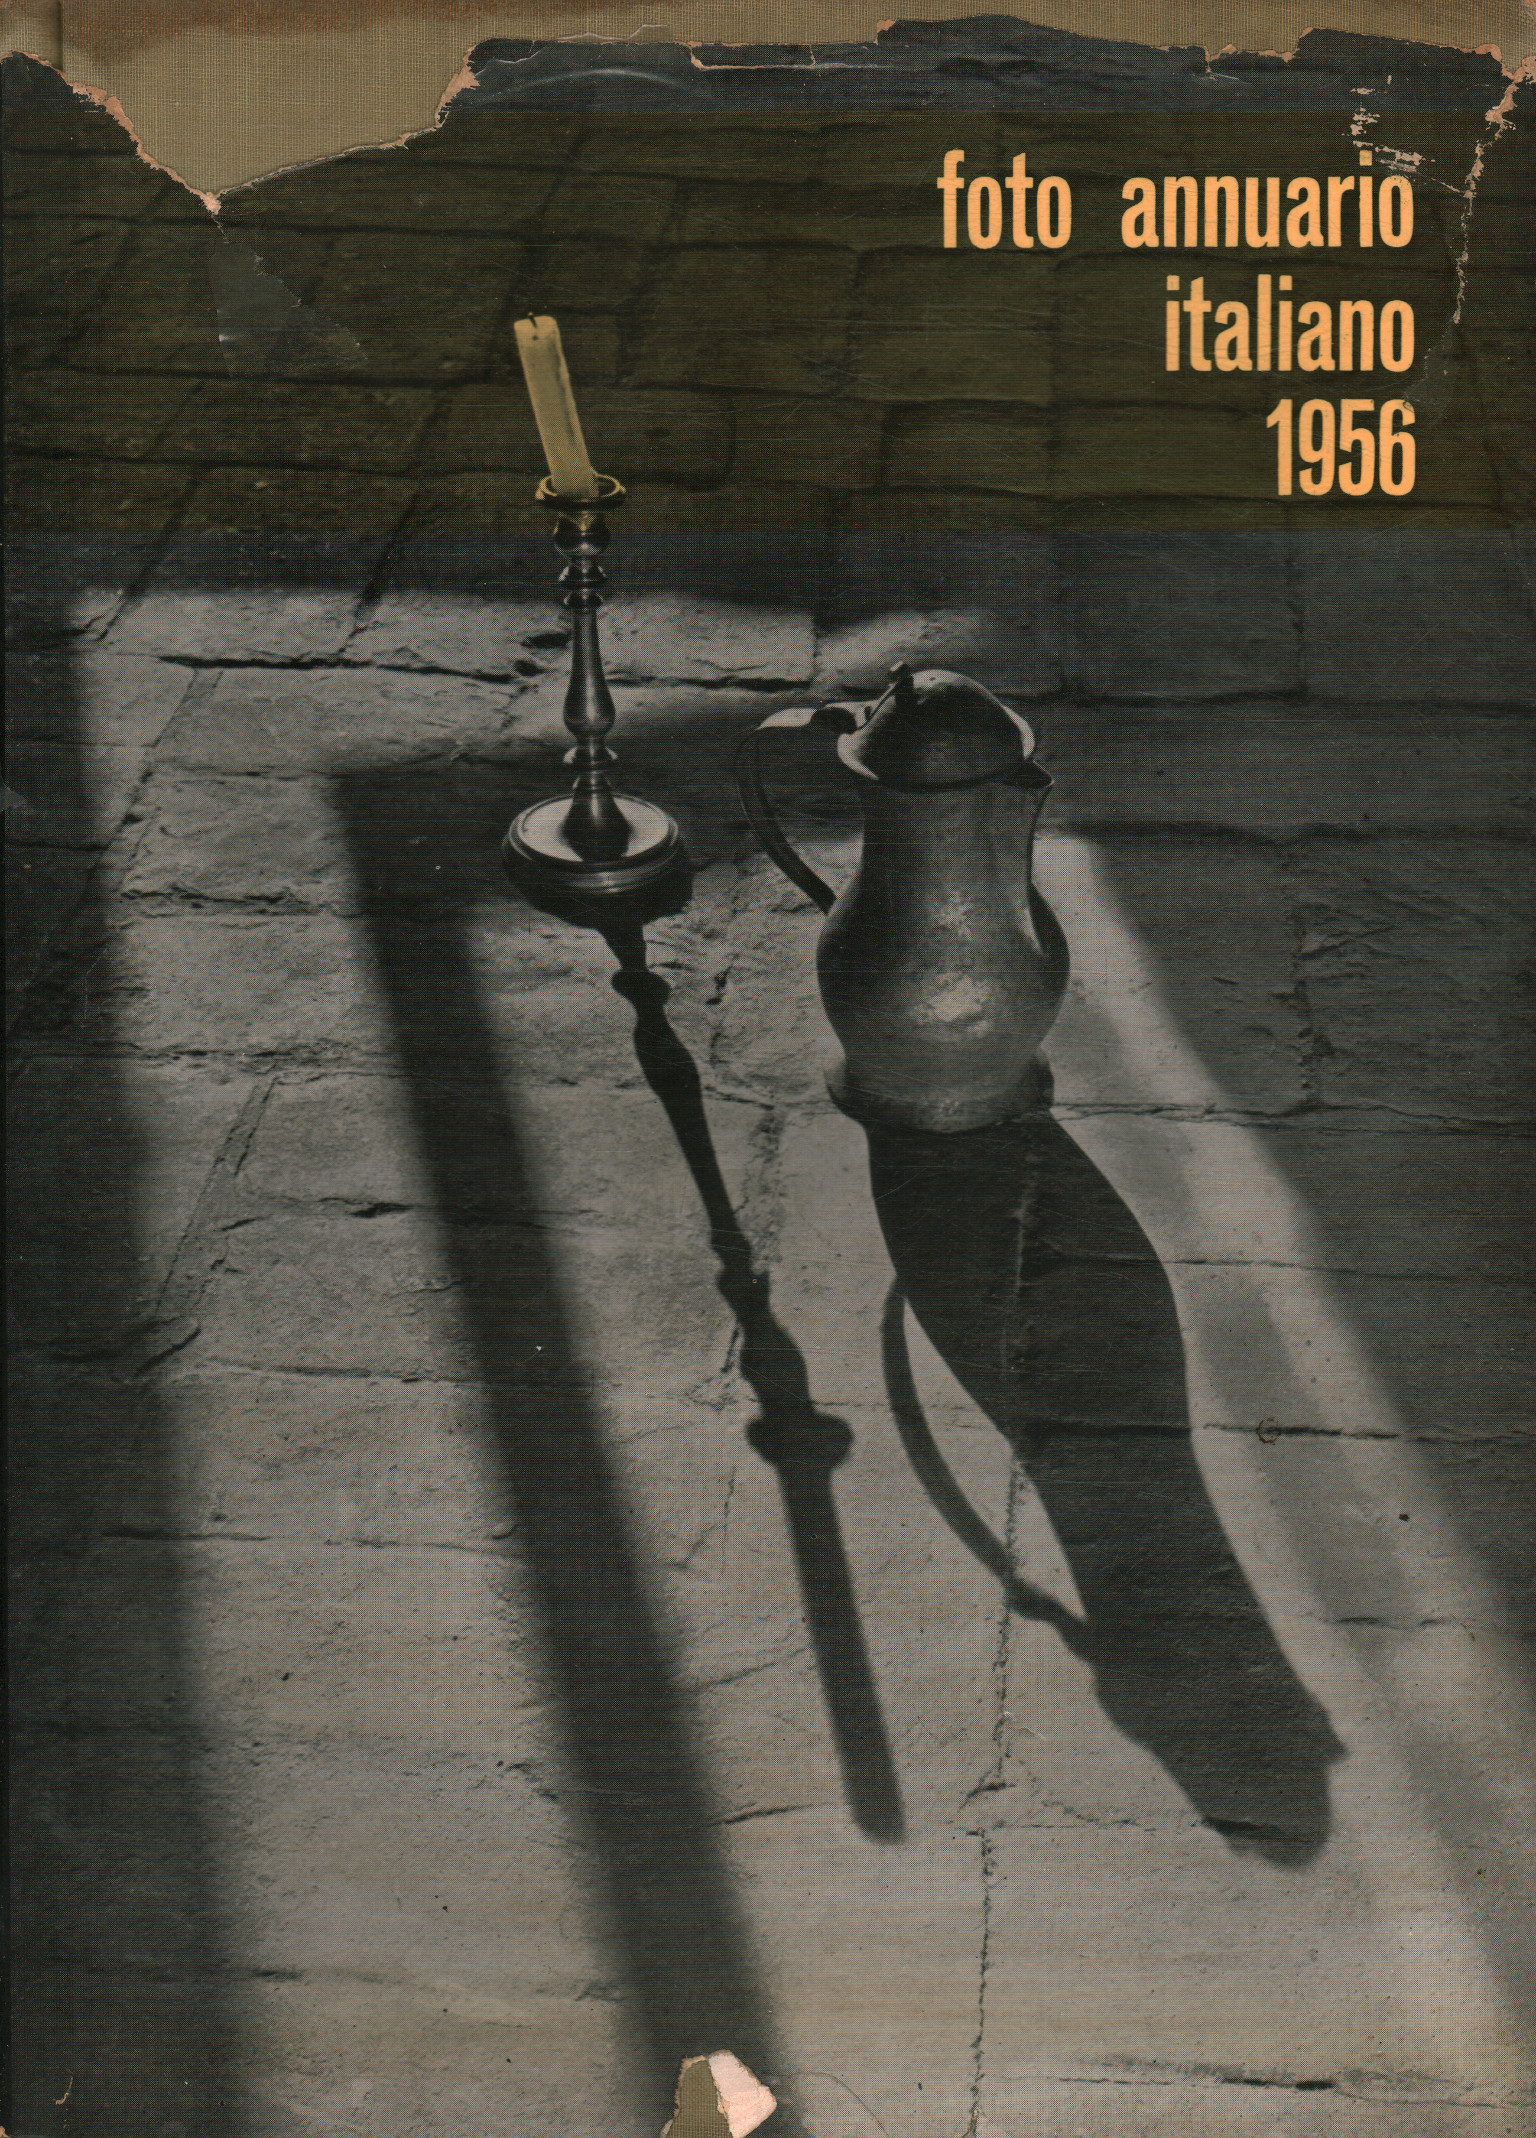 Italienisches Jahrbuchfoto 1955-1956